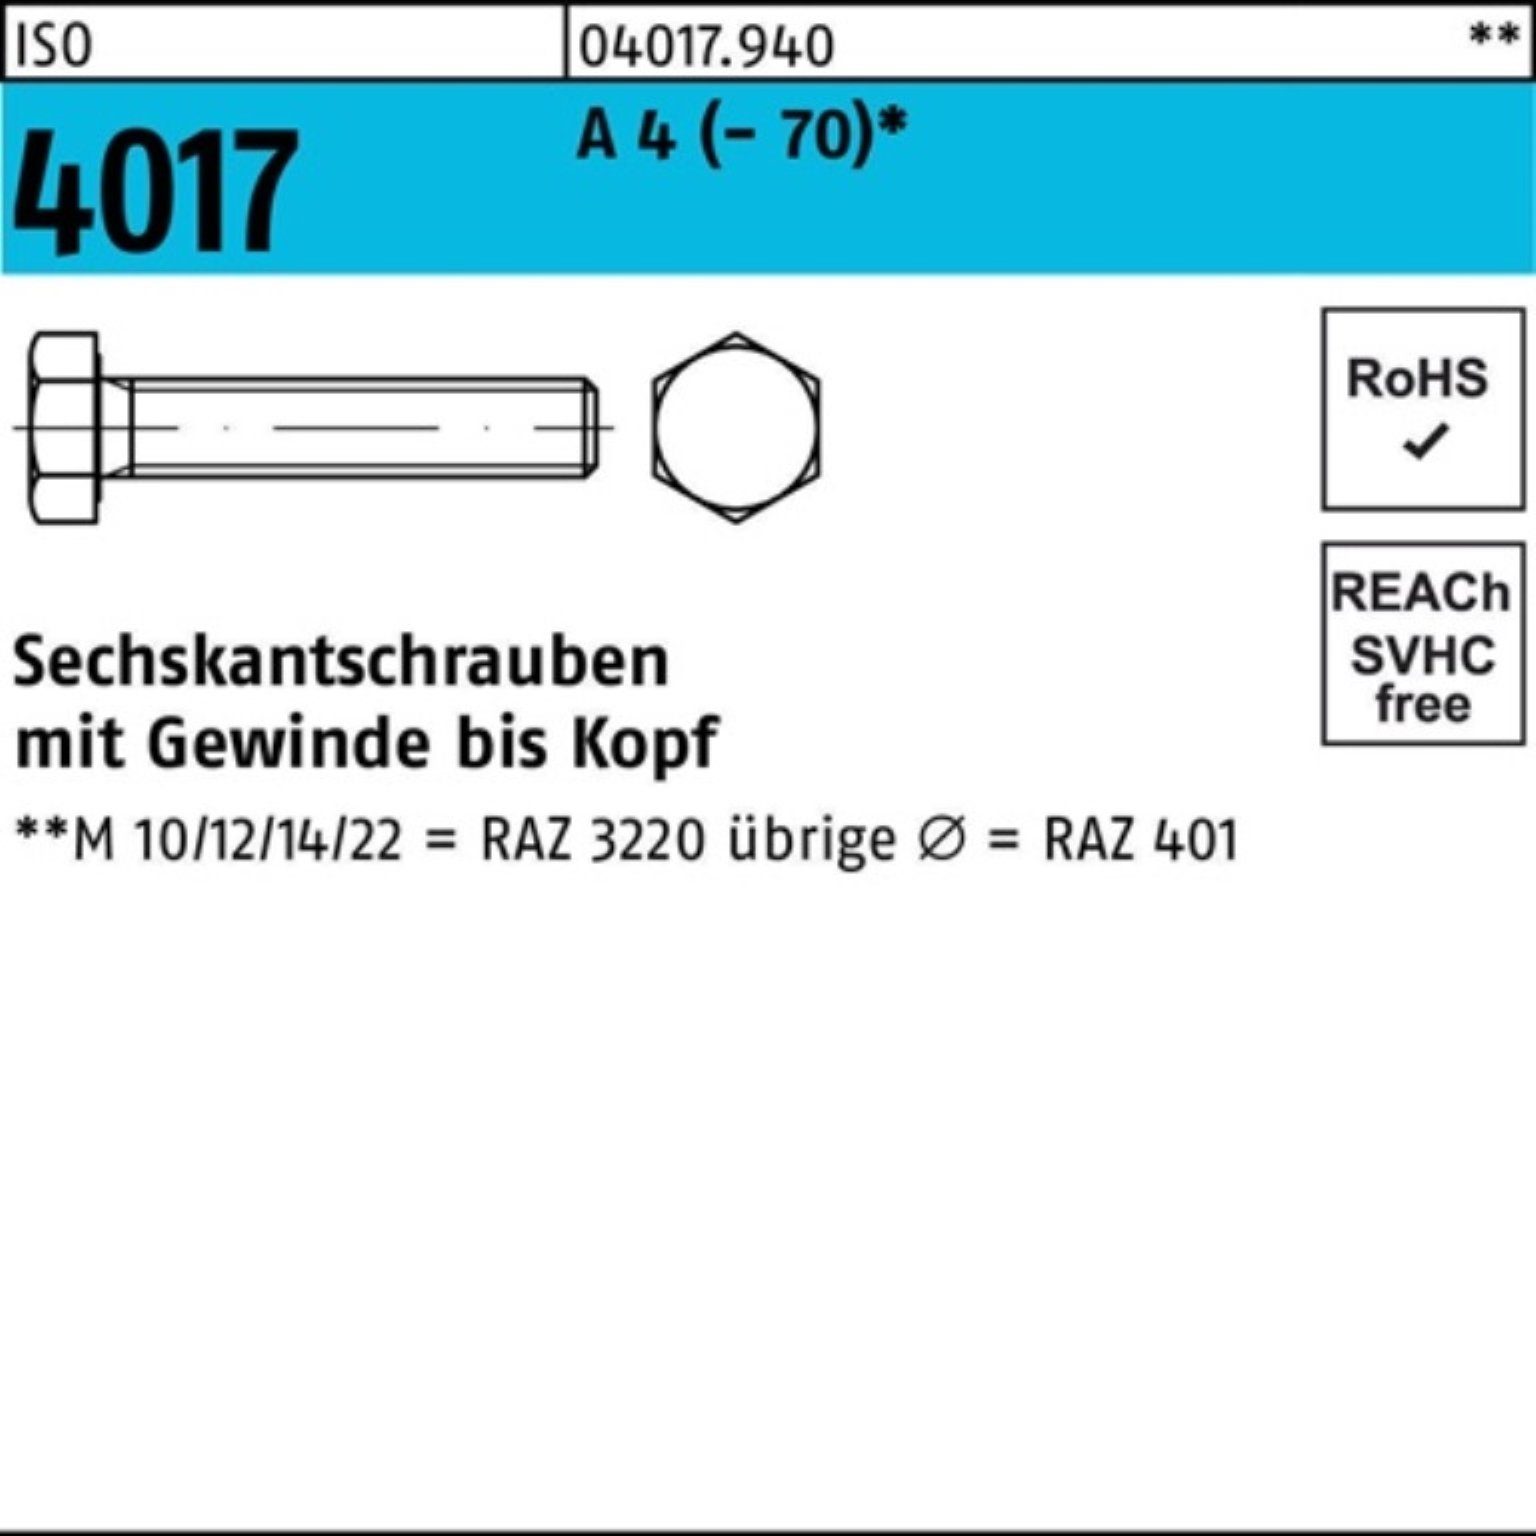 Bufab Sechskantschraube 100er Pack Sechskantschraube ISO 4017 VG M12x 150 A 4 (70) 1 Stück